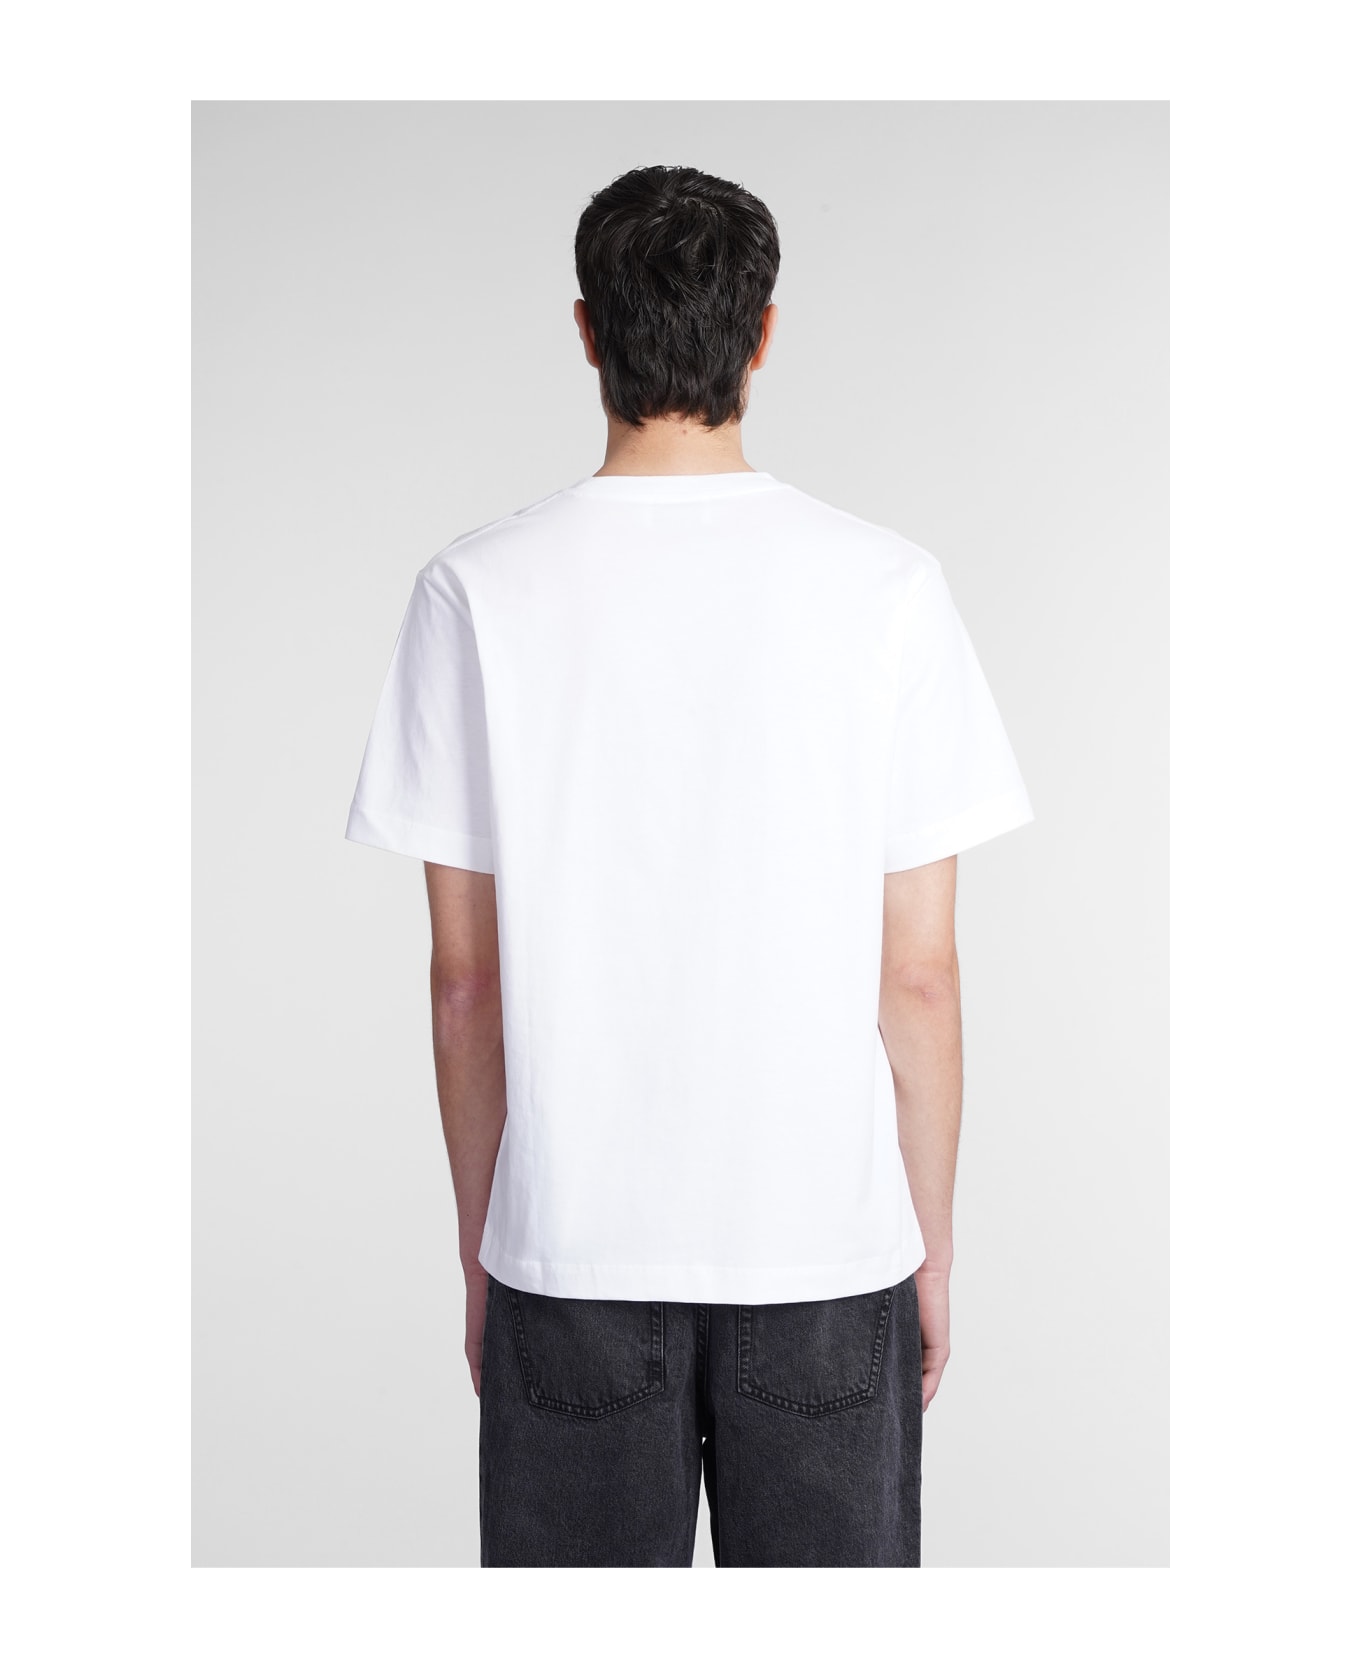 Études T-shirt In White Cotton - White シャツ